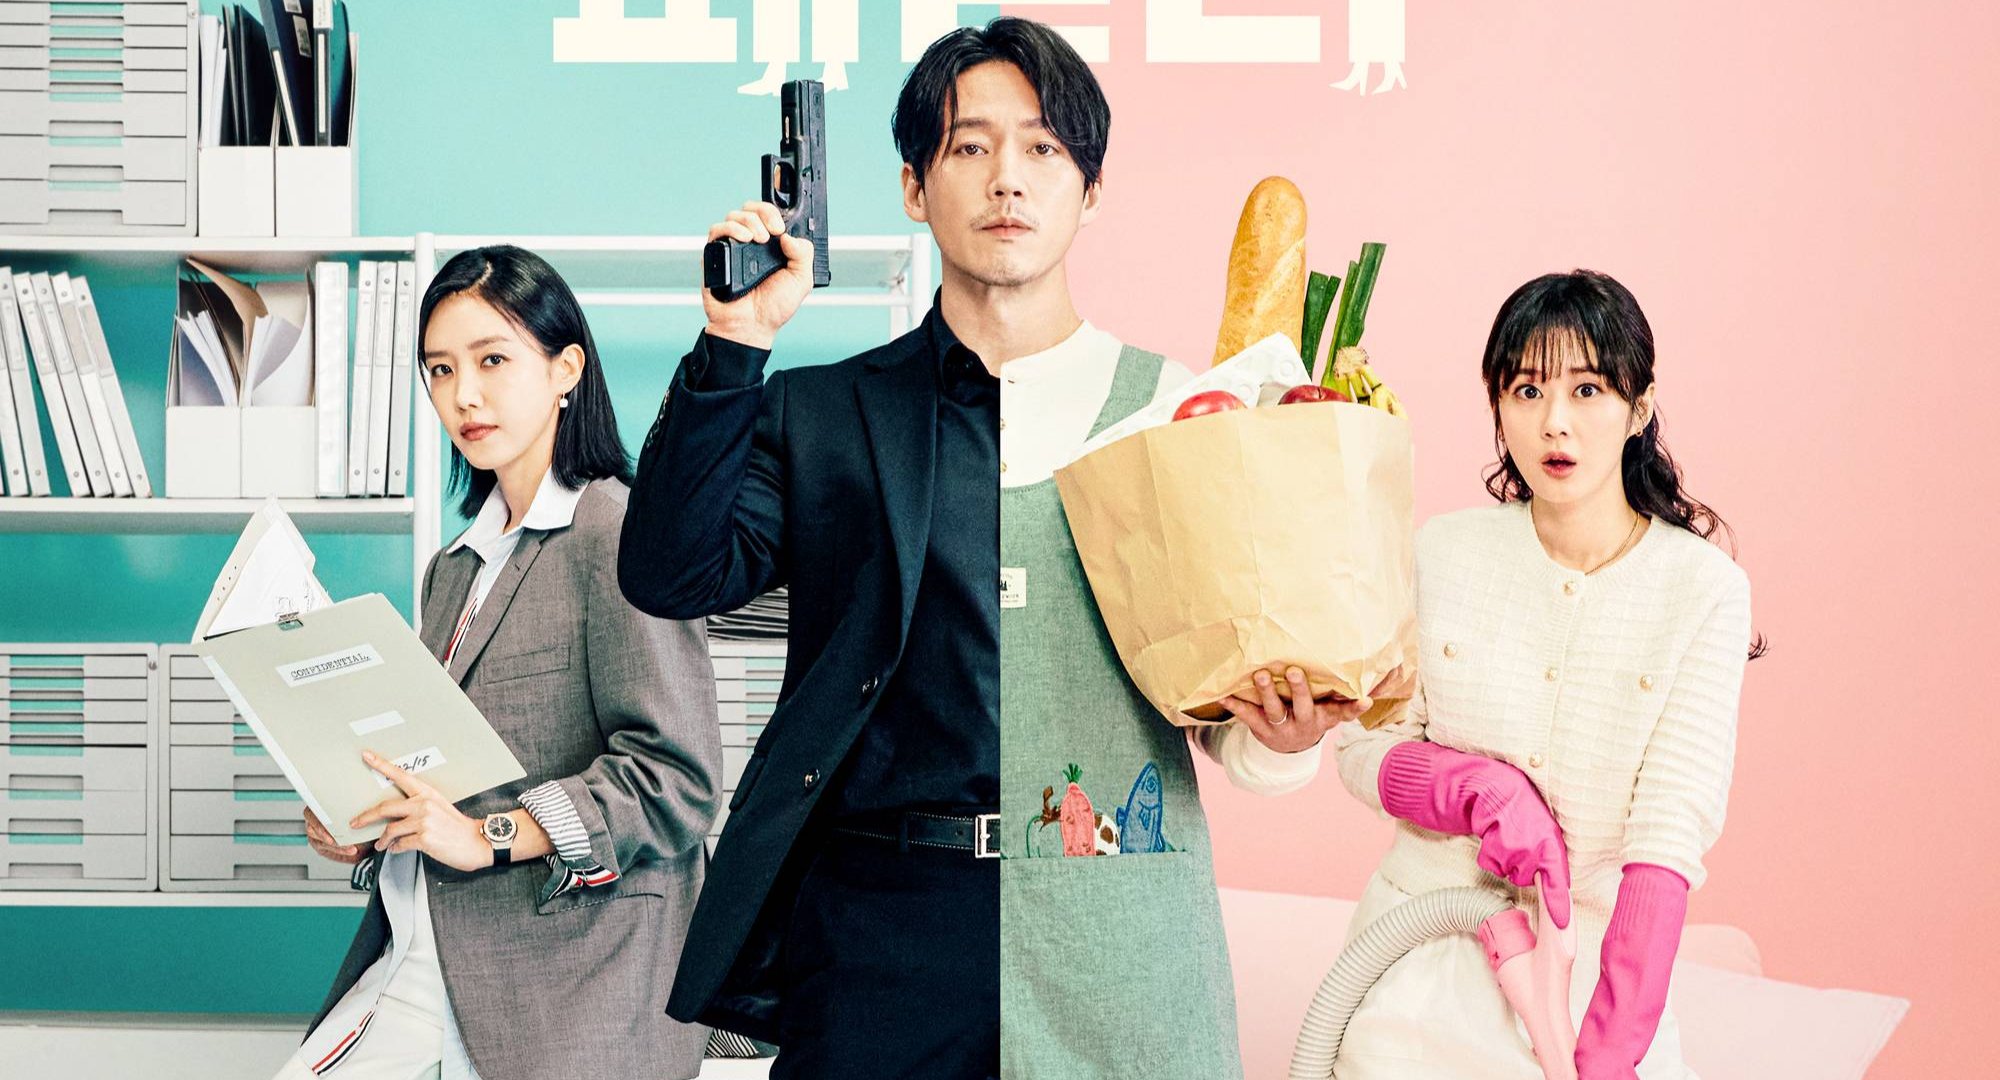 Jang Hyuk and Jang Nara for 'Family' K-drama.